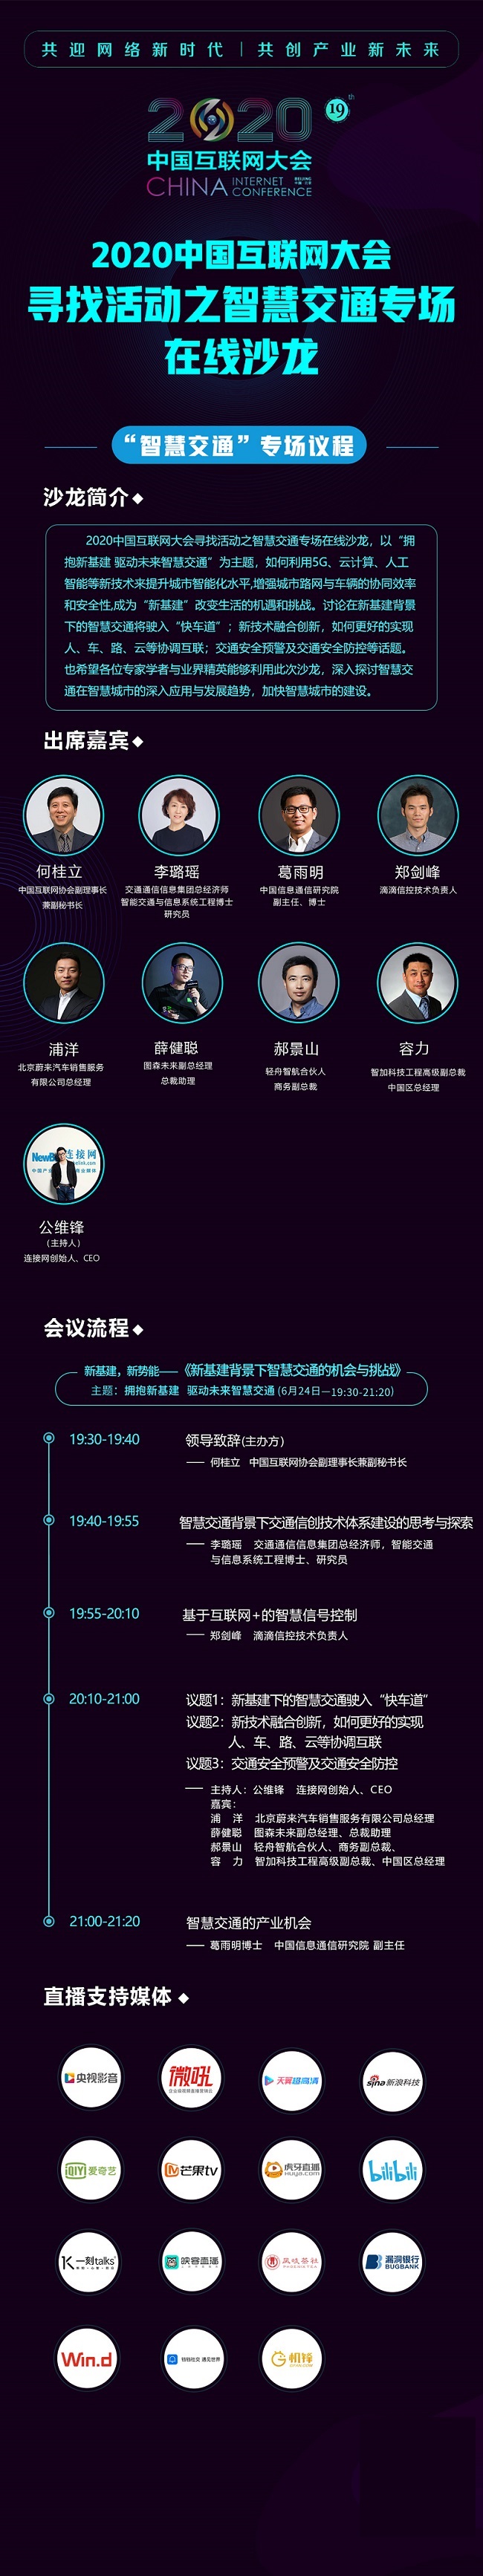 2020中国互联网大会第三场会前沙龙智慧交通专场在线上举行